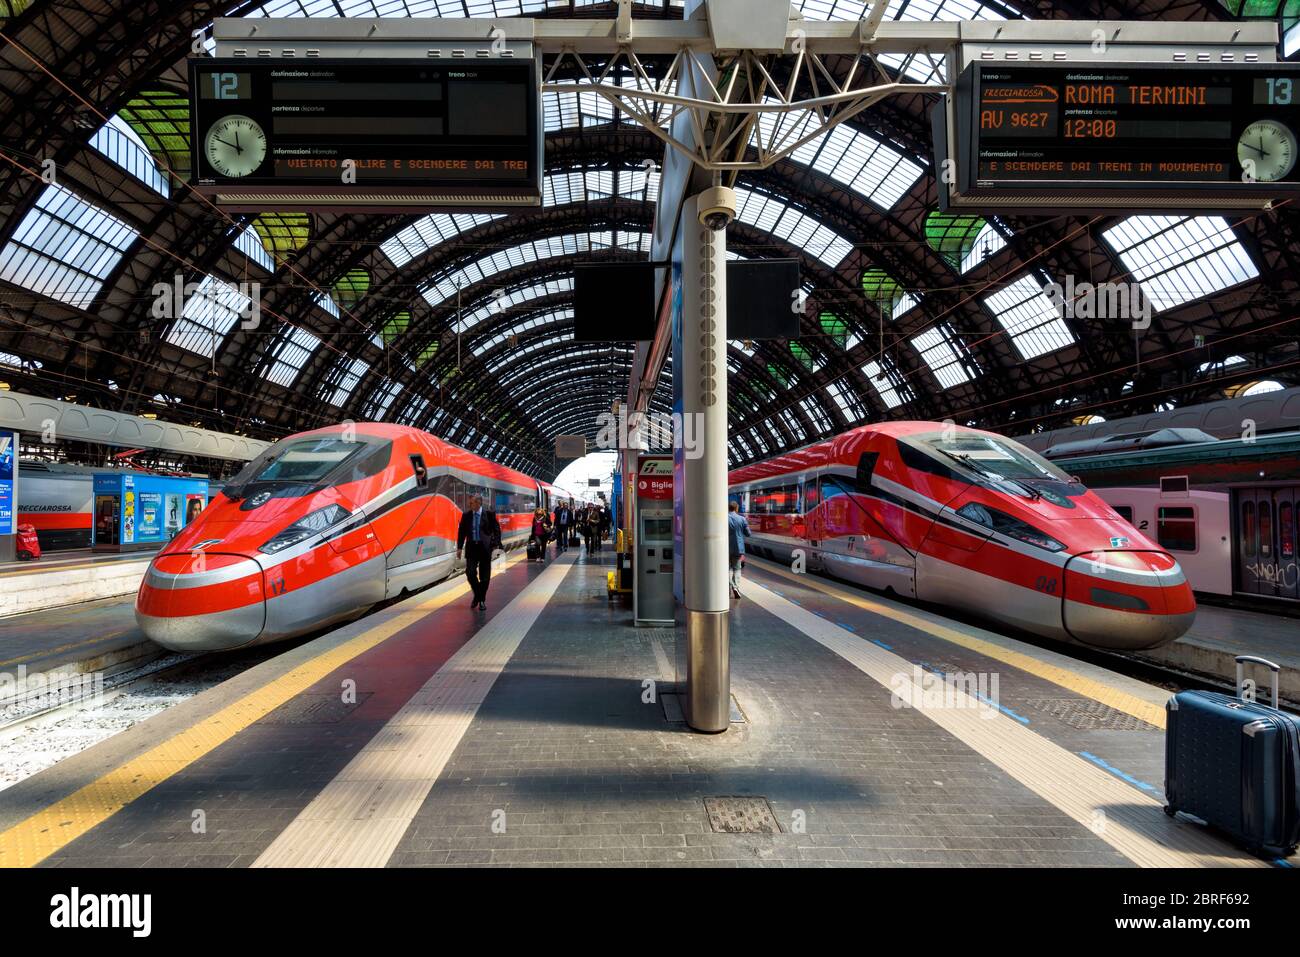 Milan, Italie - 17 mai 2017 : trains modernes à grande vitesse à la gare centrale de Milan. Banque D'Images